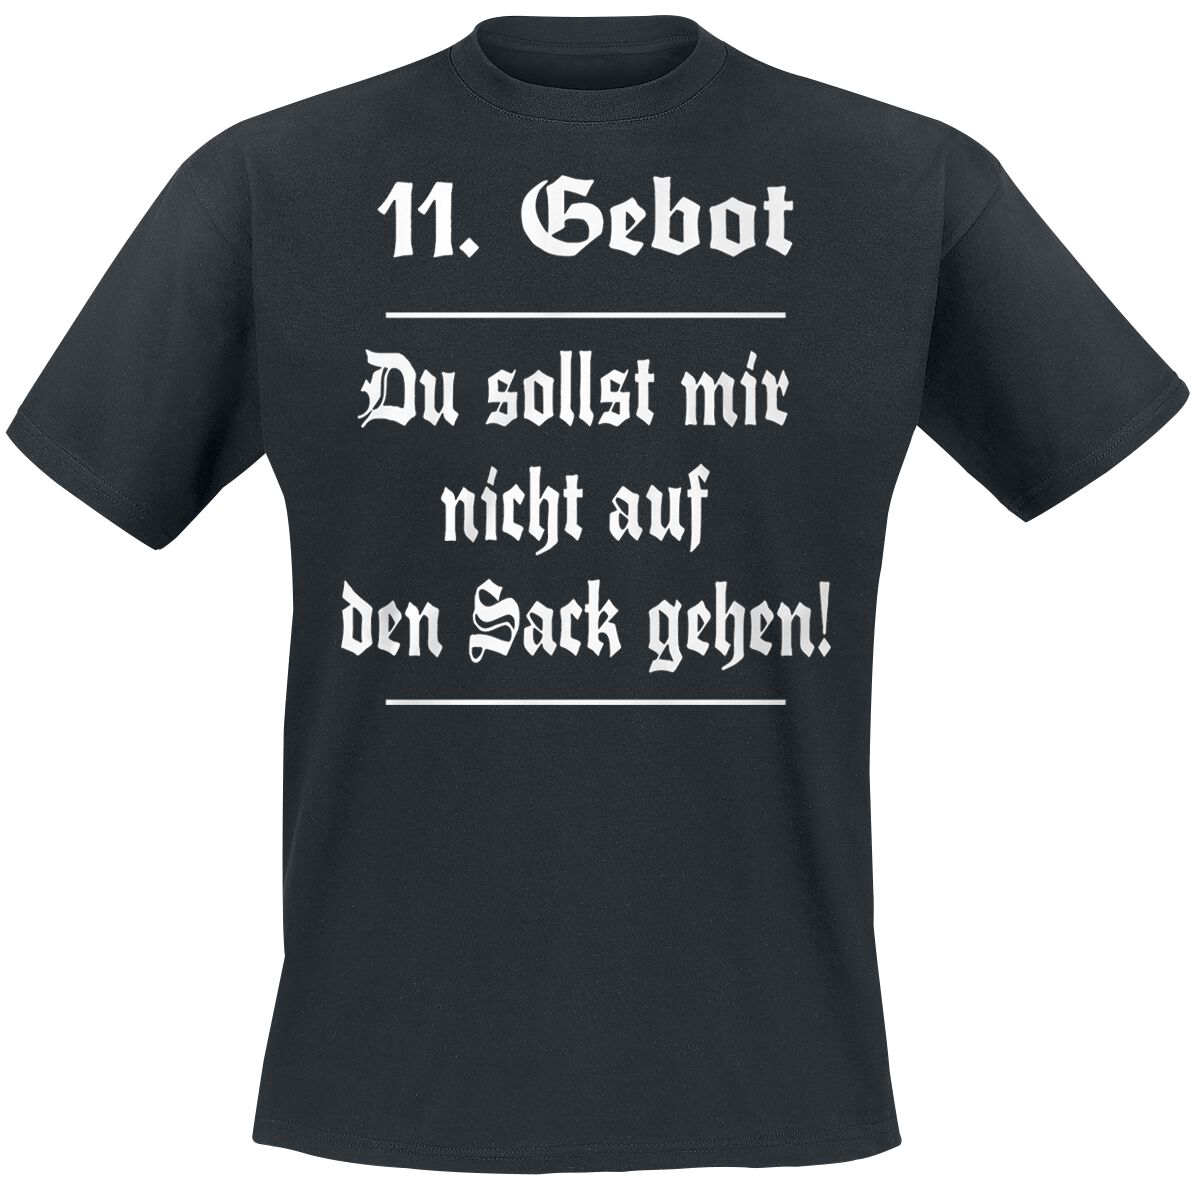 Sprüche T-Shirt - 11. Gebot - S bis 5XL - für Männer - Größe S - schwarz